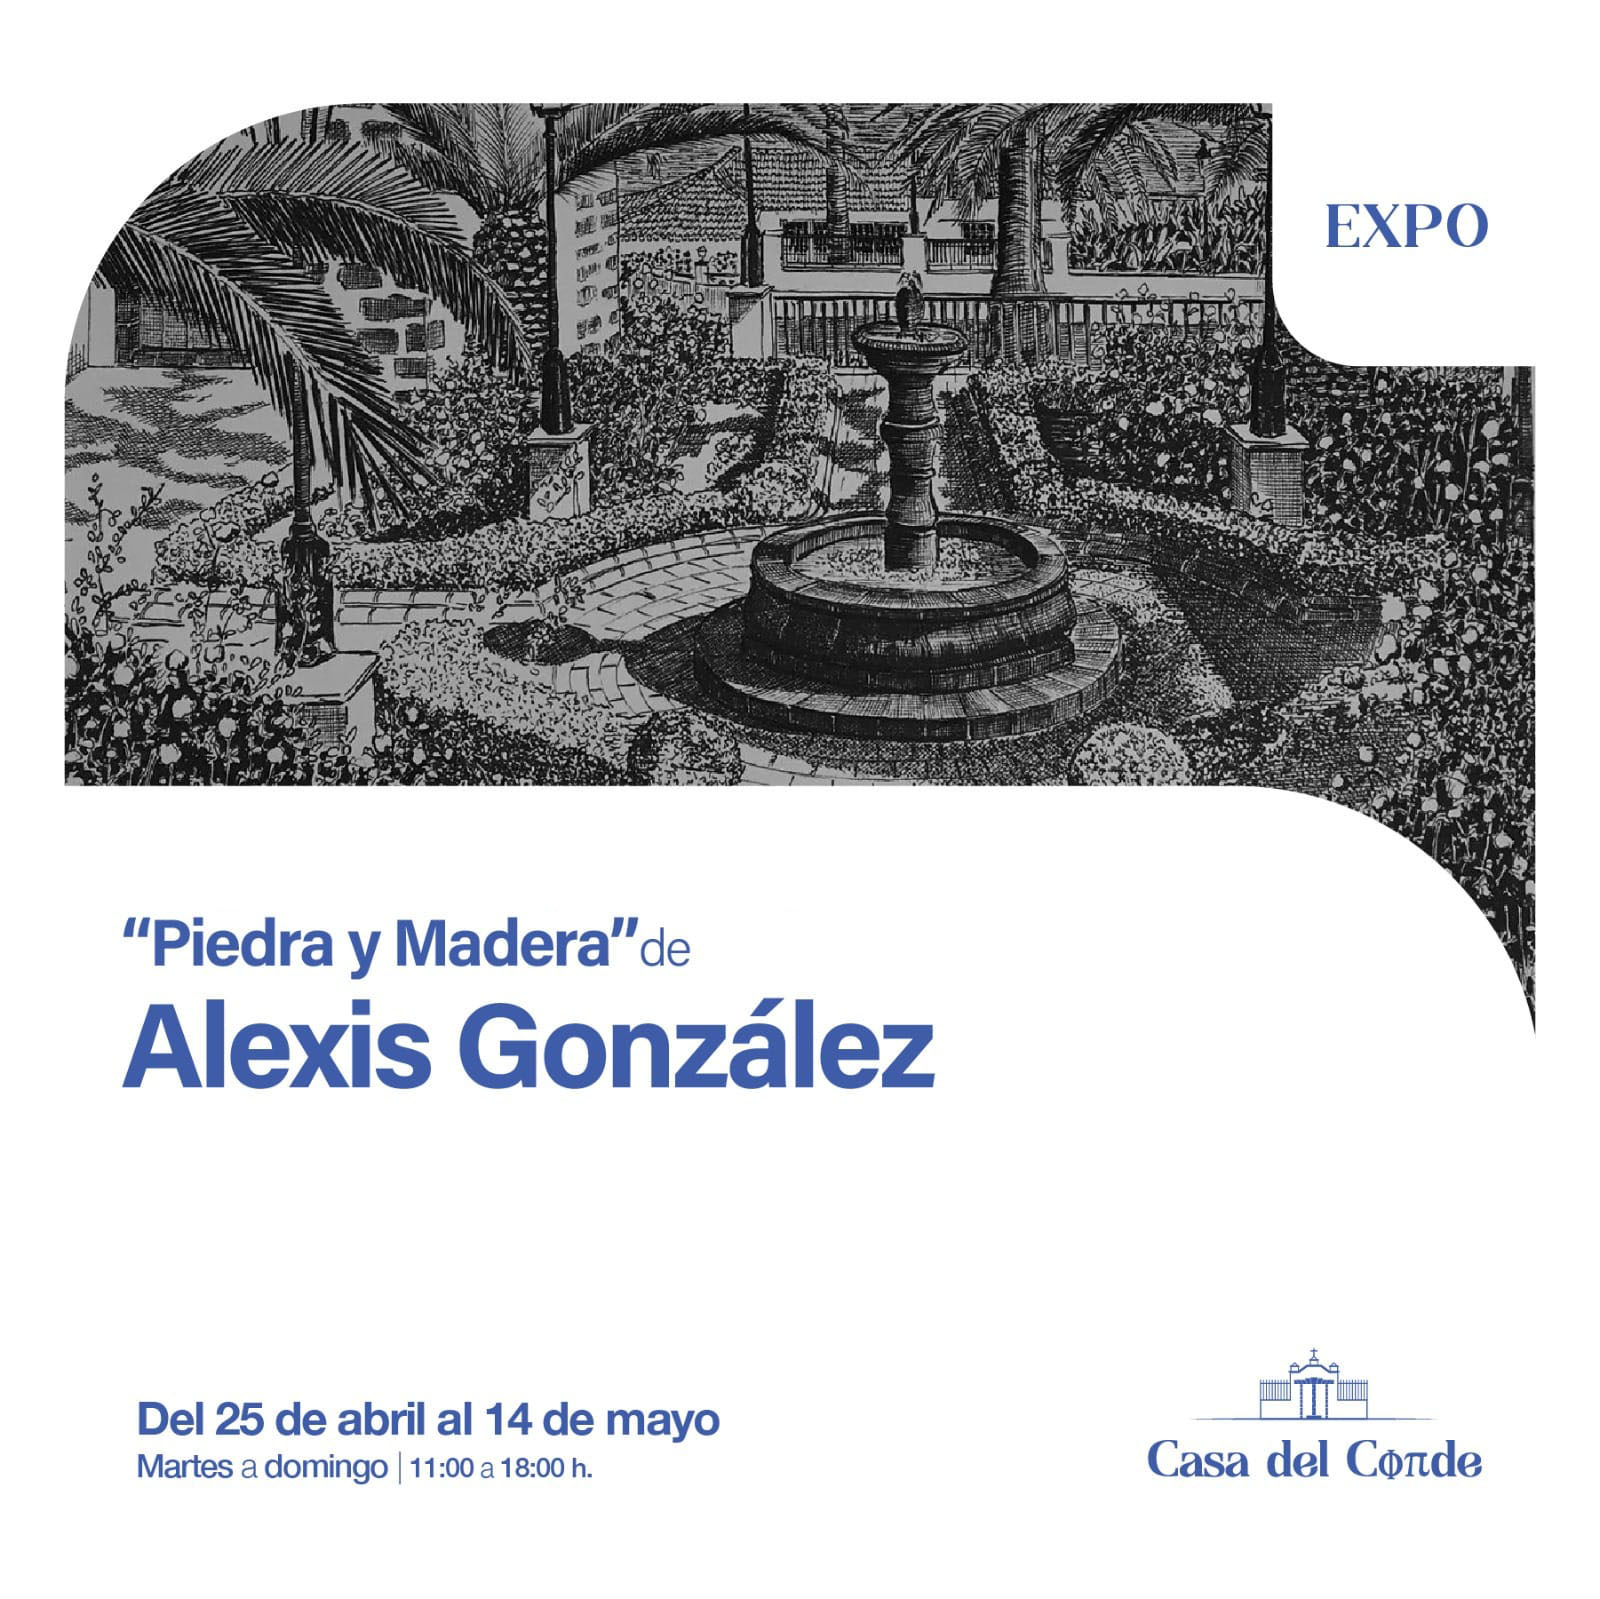 Exposición de plumilla “Piedra y Madera” de Alexis González